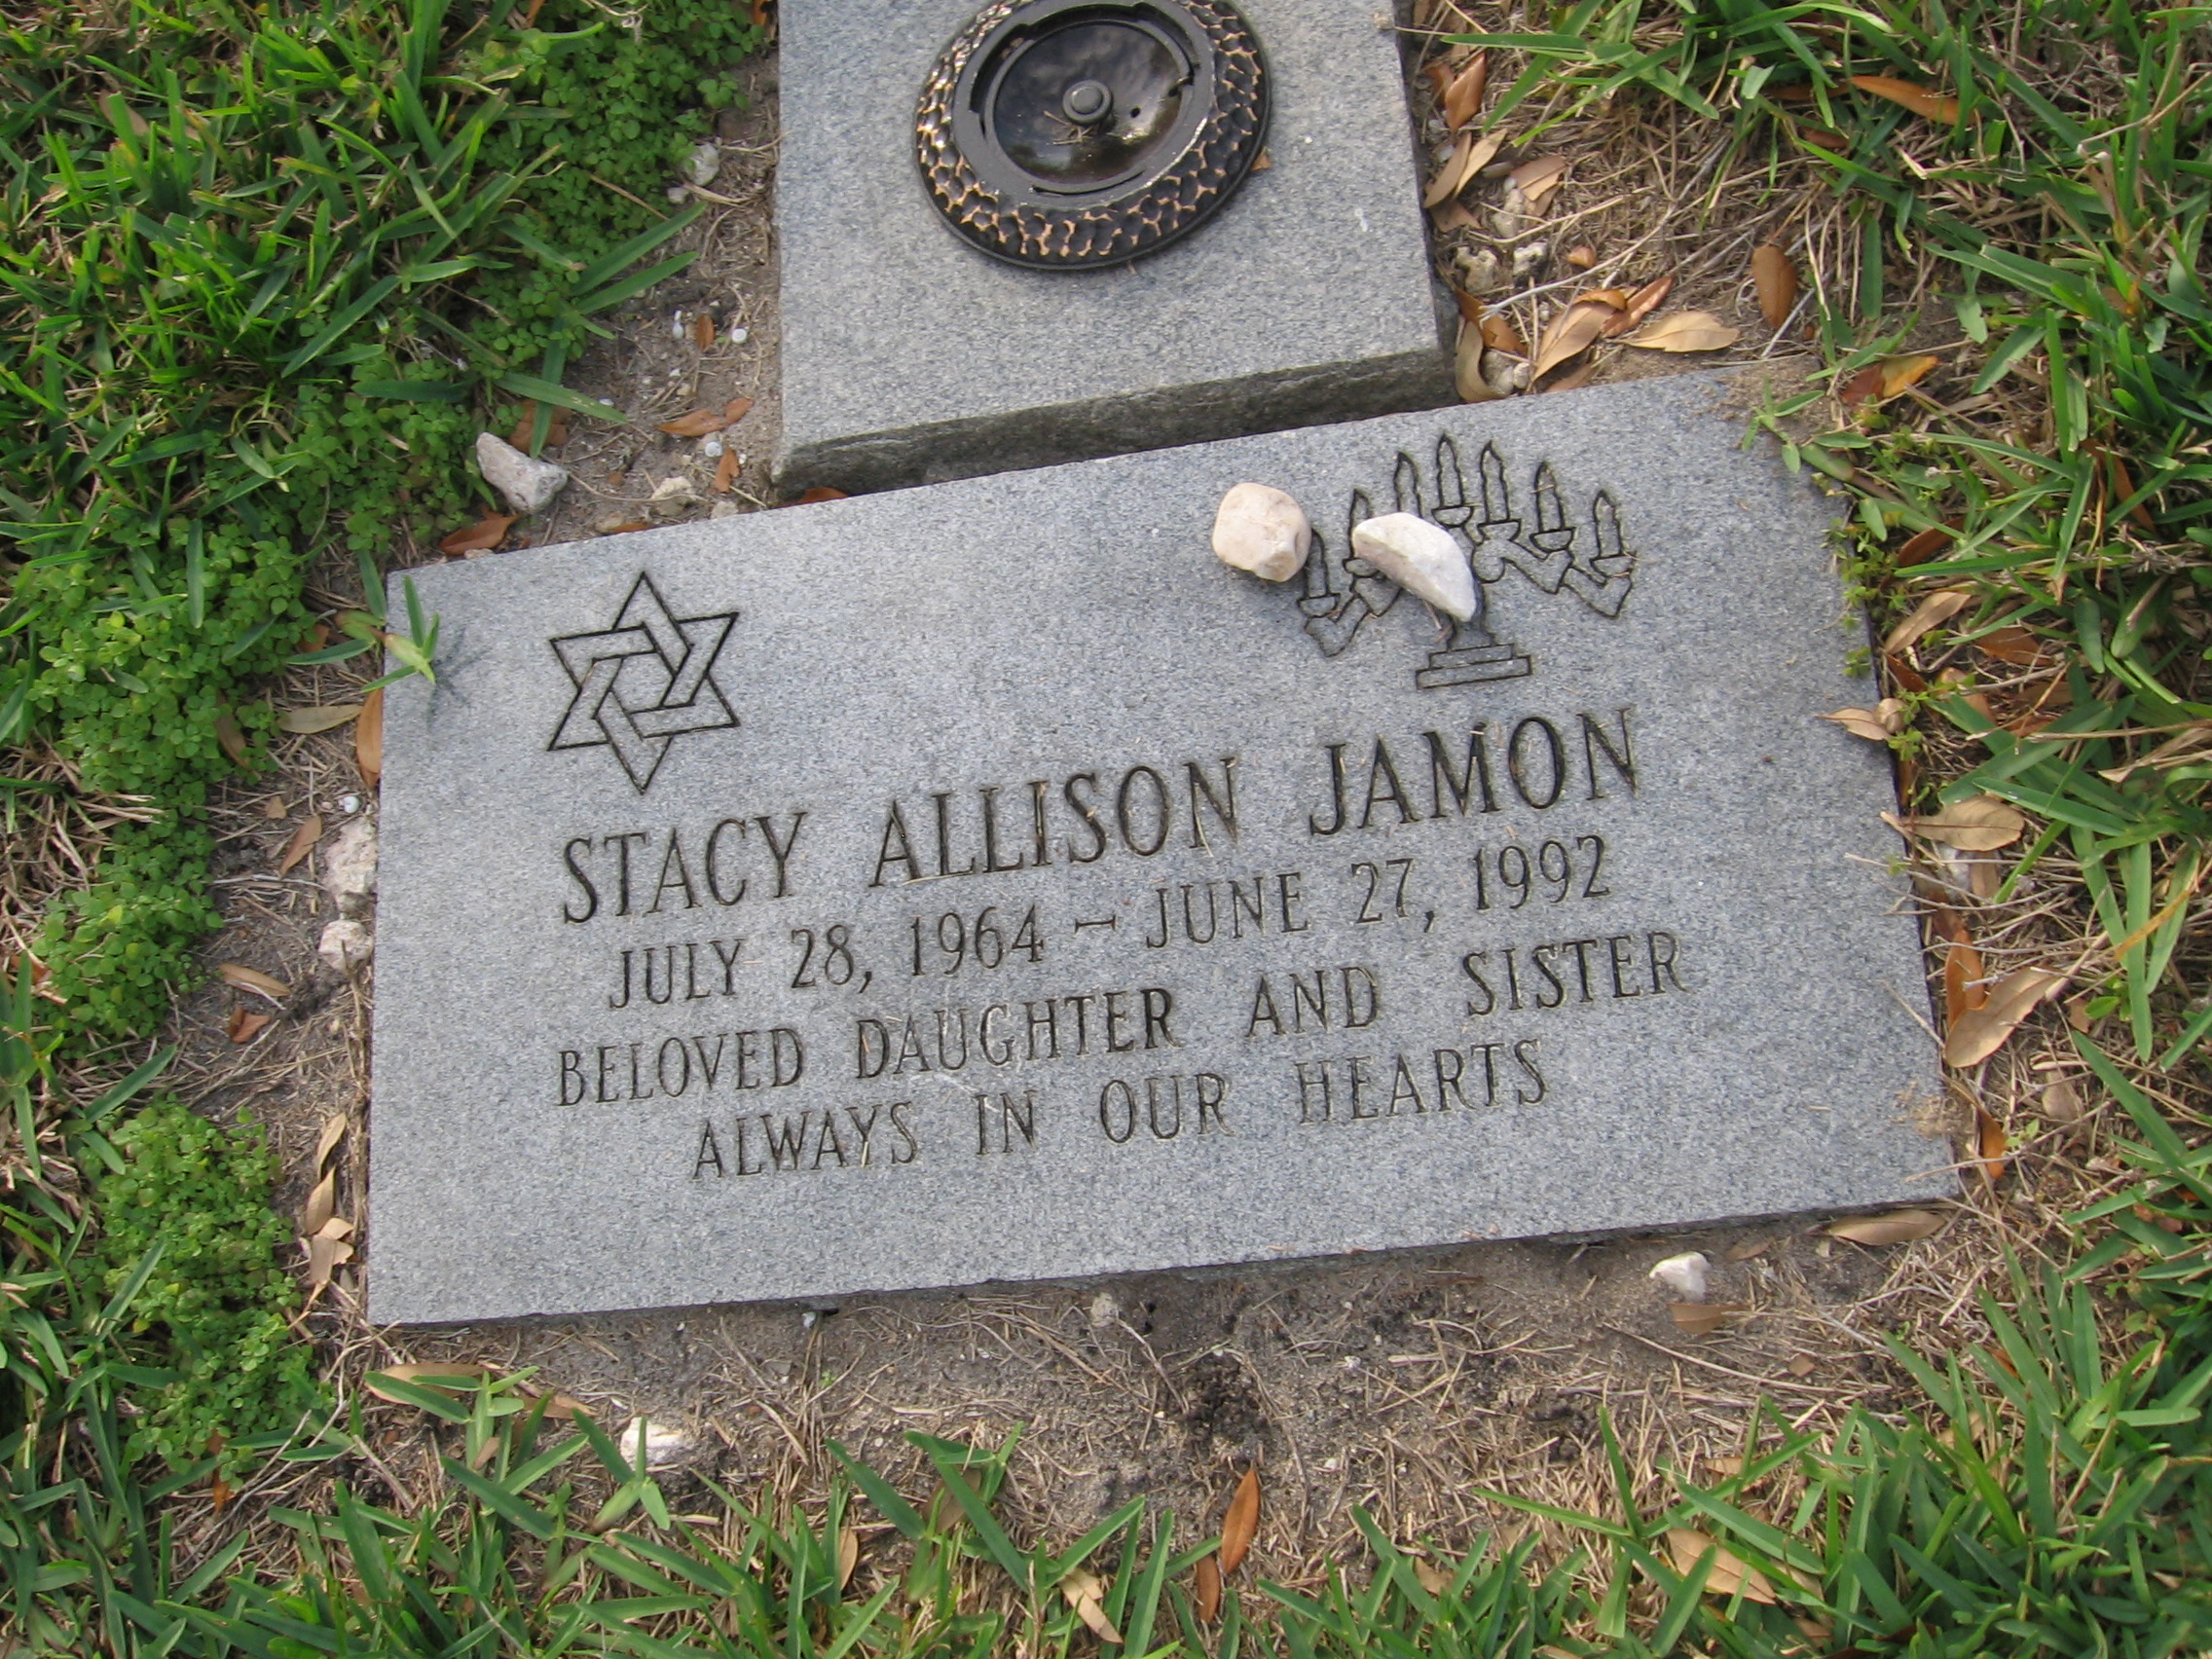 Stacy Allison Jamon